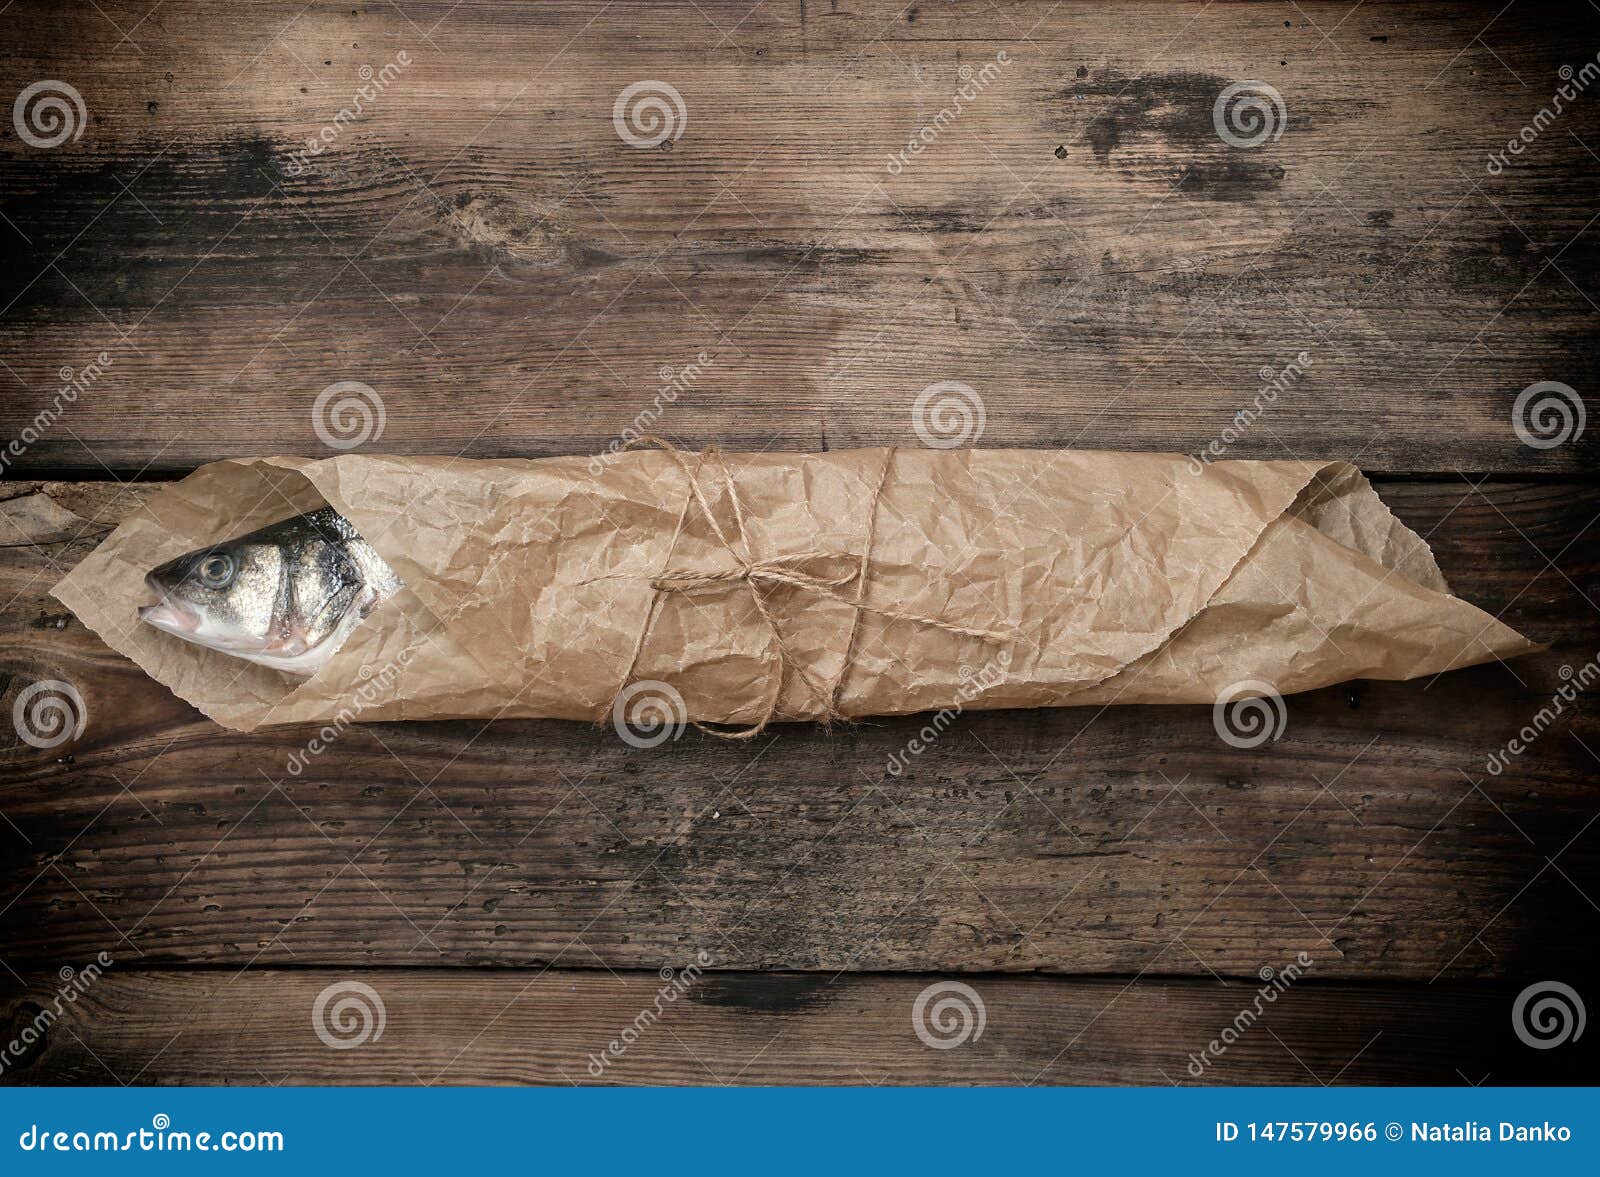 Тут рыбу заворачивали. Упакованная рыба в бумаге. Рыба завернутая в белую бумагу. Упаковать рыбу в крафт бумагу.